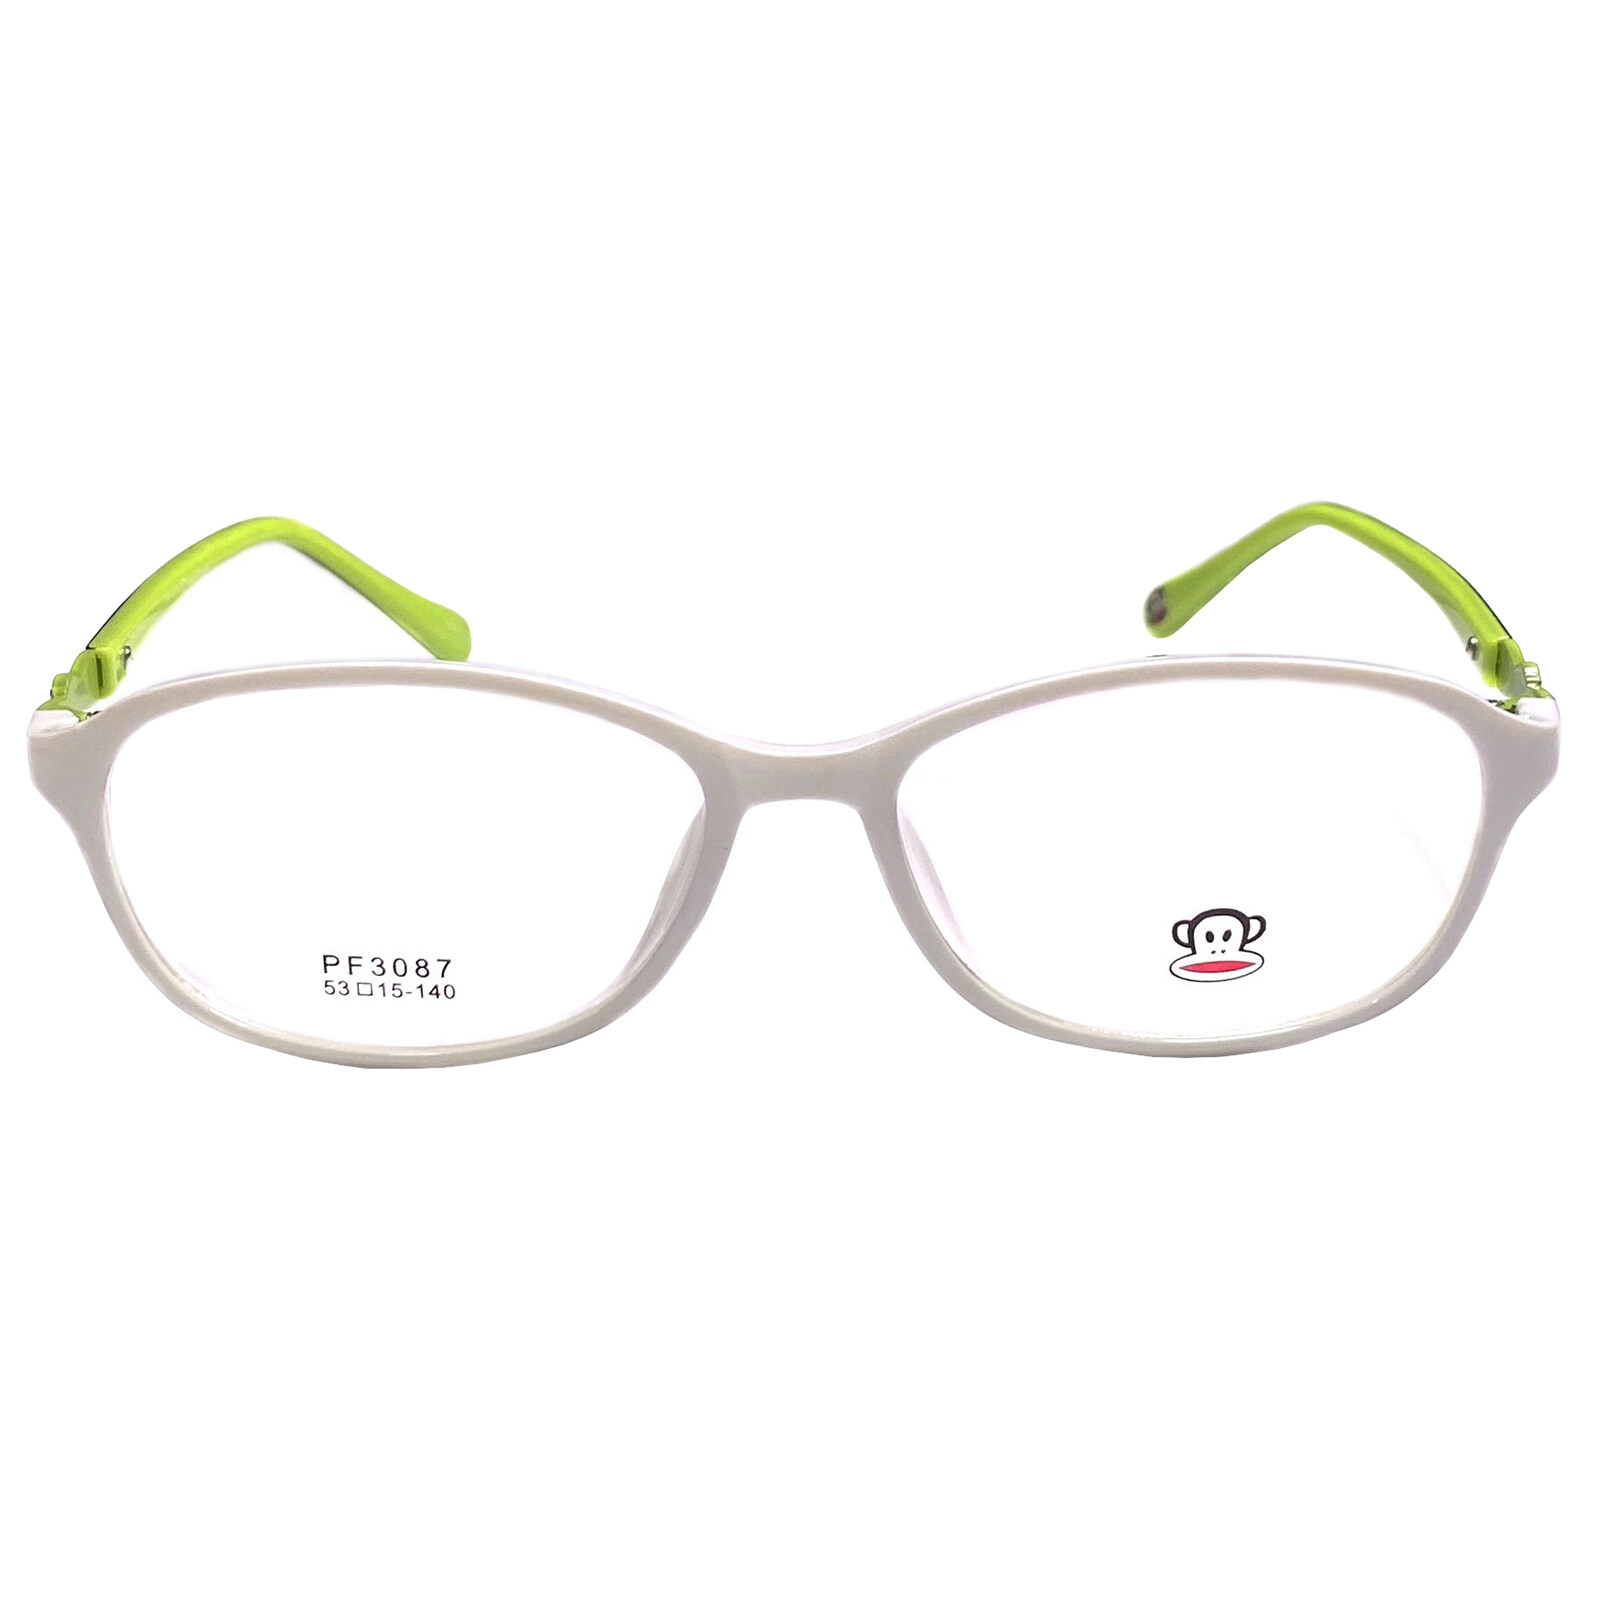 แว่นตา สำหรับตัดเลนส์ แว่นสายตา กรอบแว่นตา Fashion รุ่น Paul Frank 3087 กรอบเต็ม Rectangle ทรงรี ขาข้อต่อ วัสดุ TR 90 รับตัดเลนส์ทุกชนิด